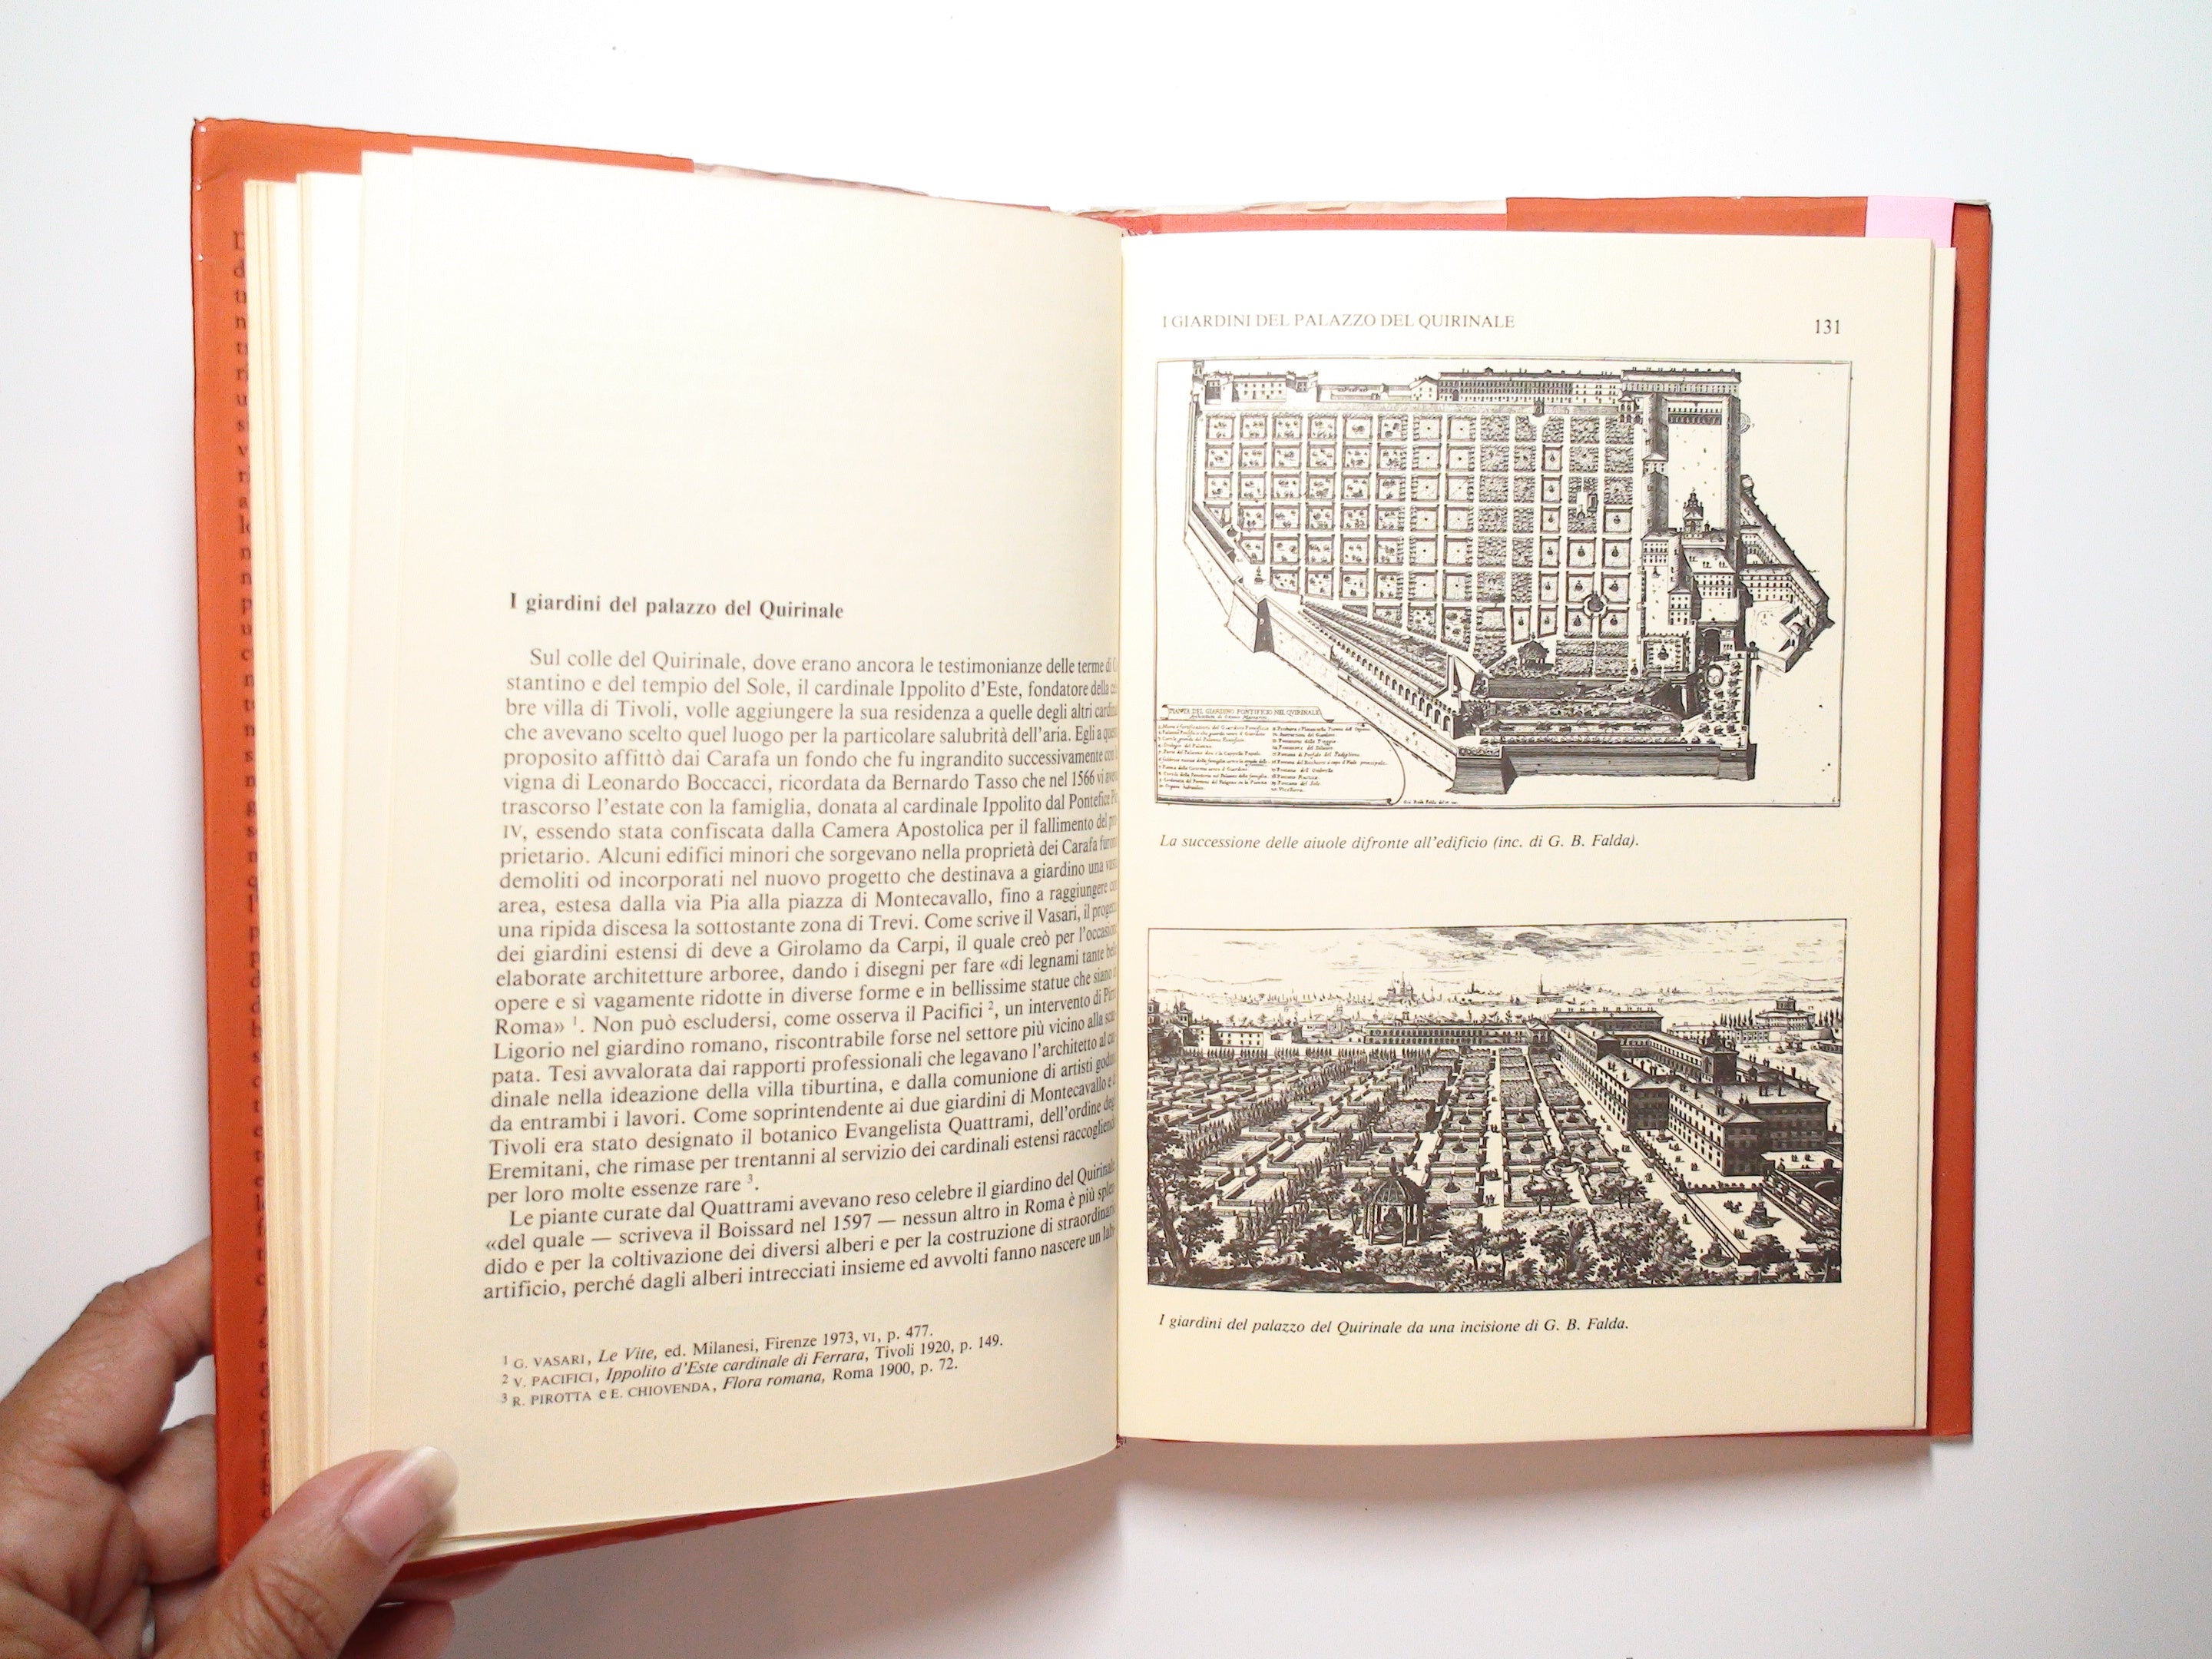 I Giardini di Roma, Alessandro Tagliolini, 1st Ed, Italian, Illustrated, 1980